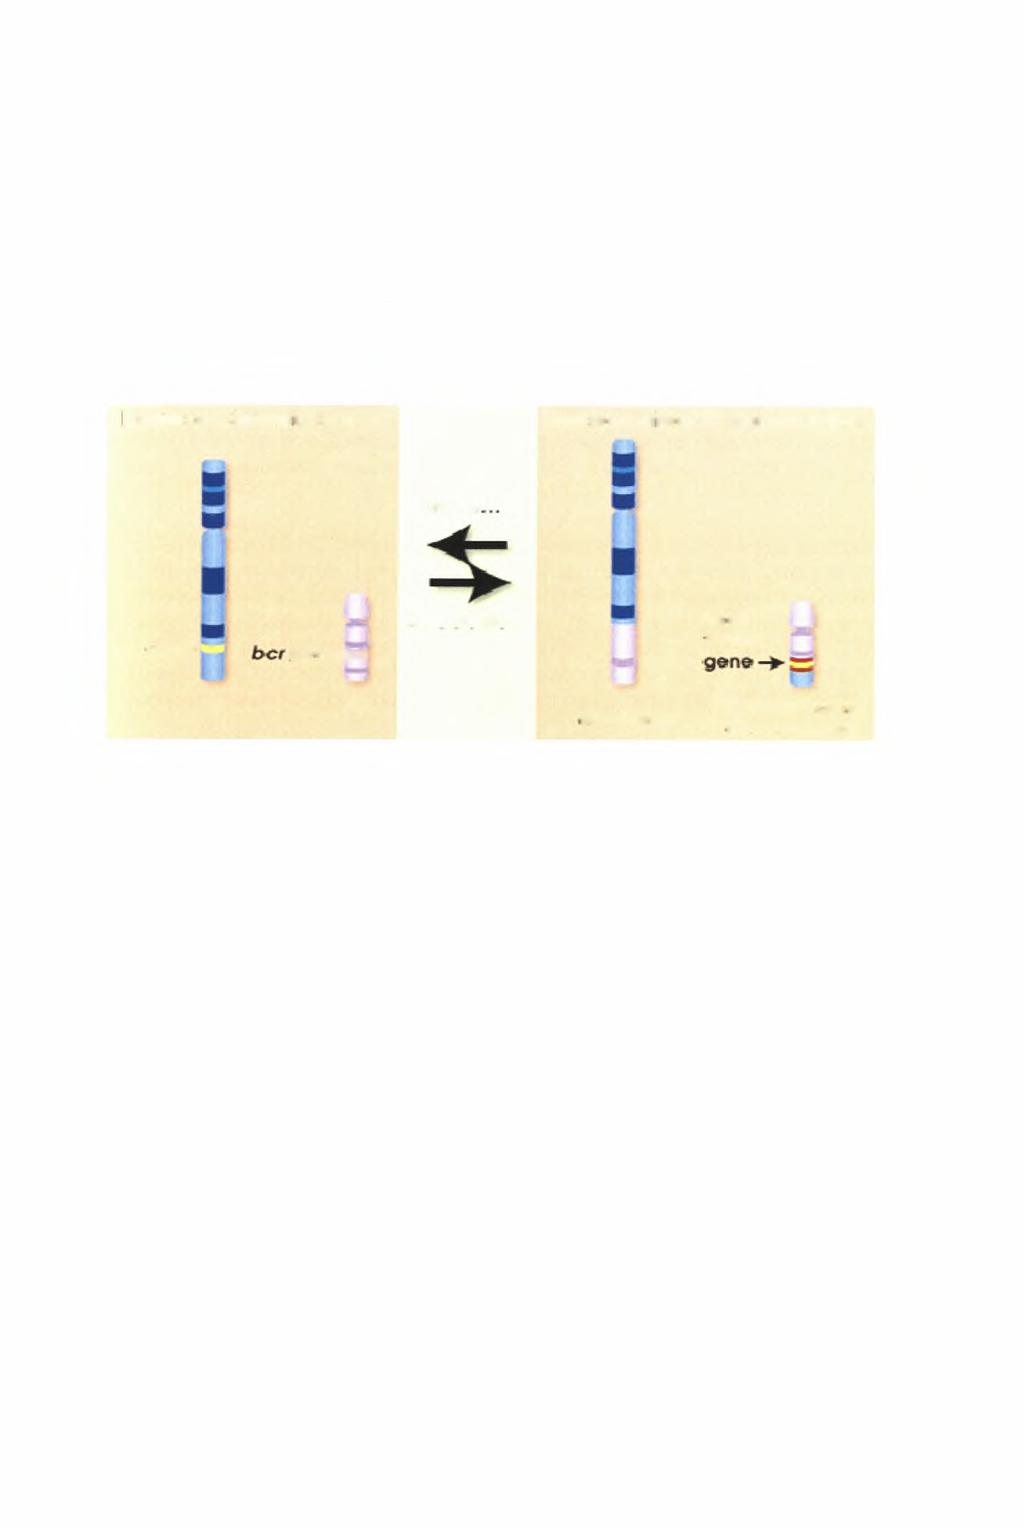 Η αντιμετάθεση t(9;22) έχει σαν αποτέλεσμα τη δημιουργία ενός χιμαιρικού γονιδίου που λέγεται bcr/abl.